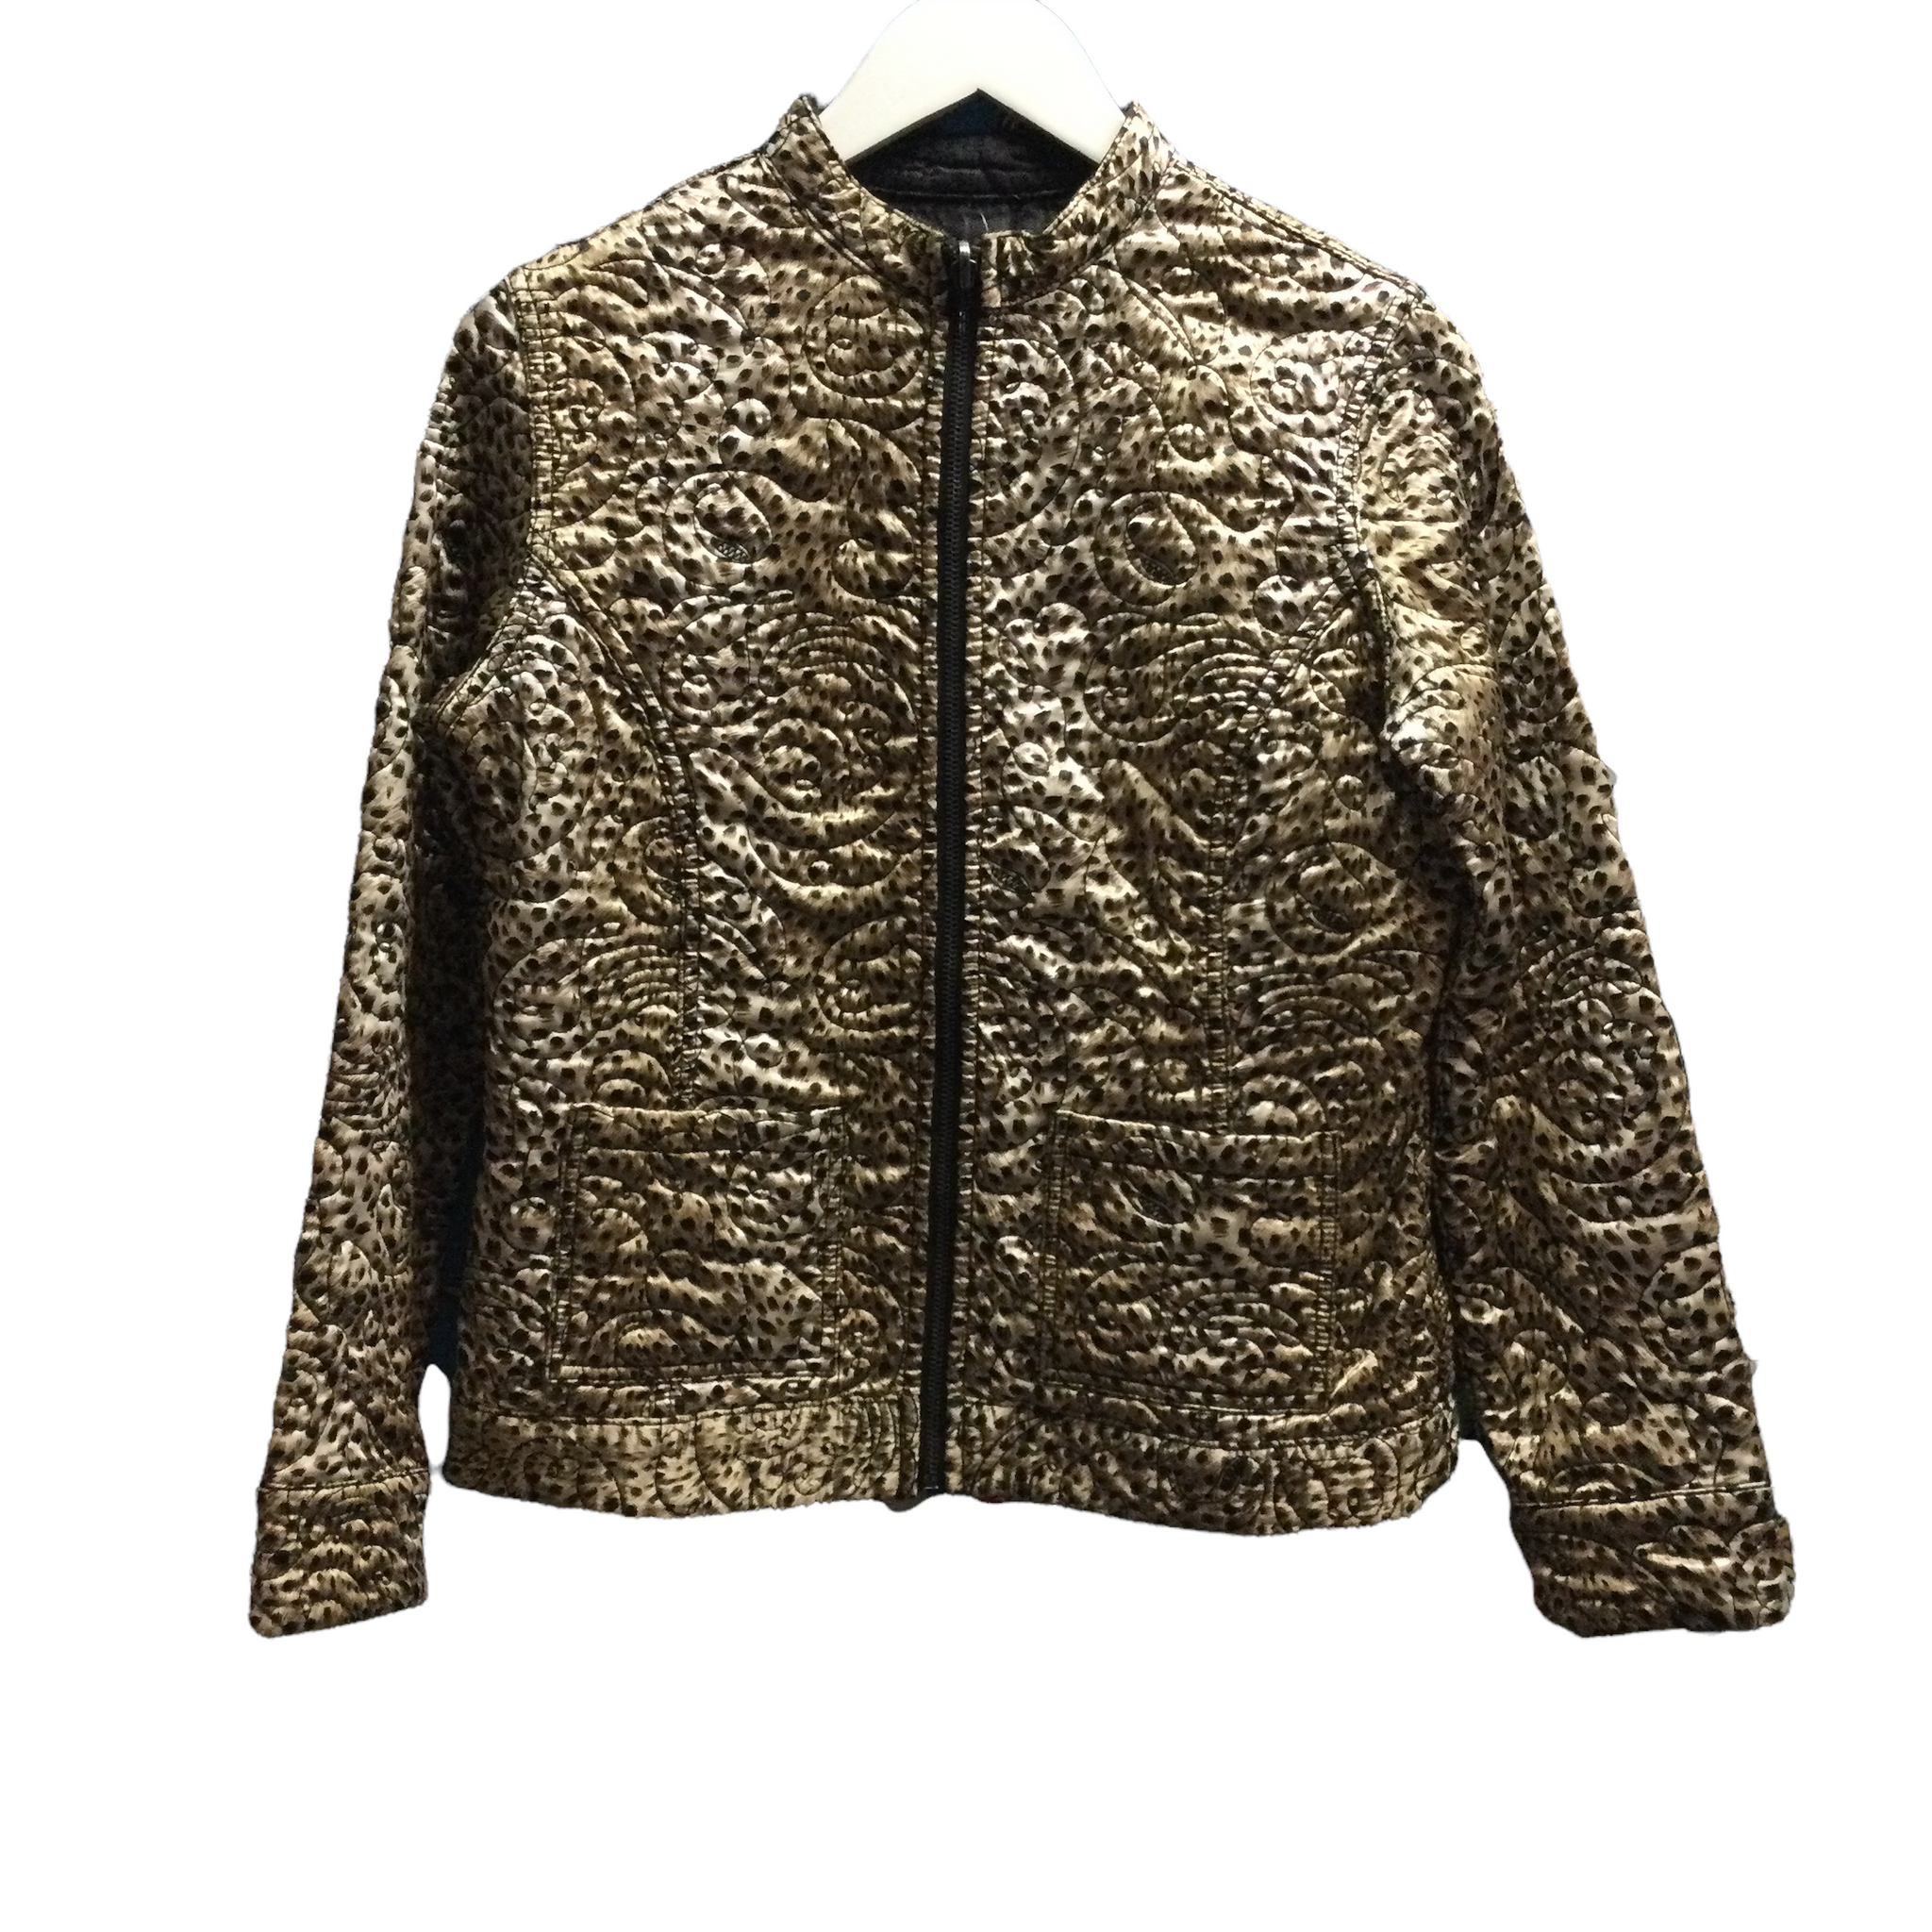 Vintage Leopard Print Gold Quilted Jacket